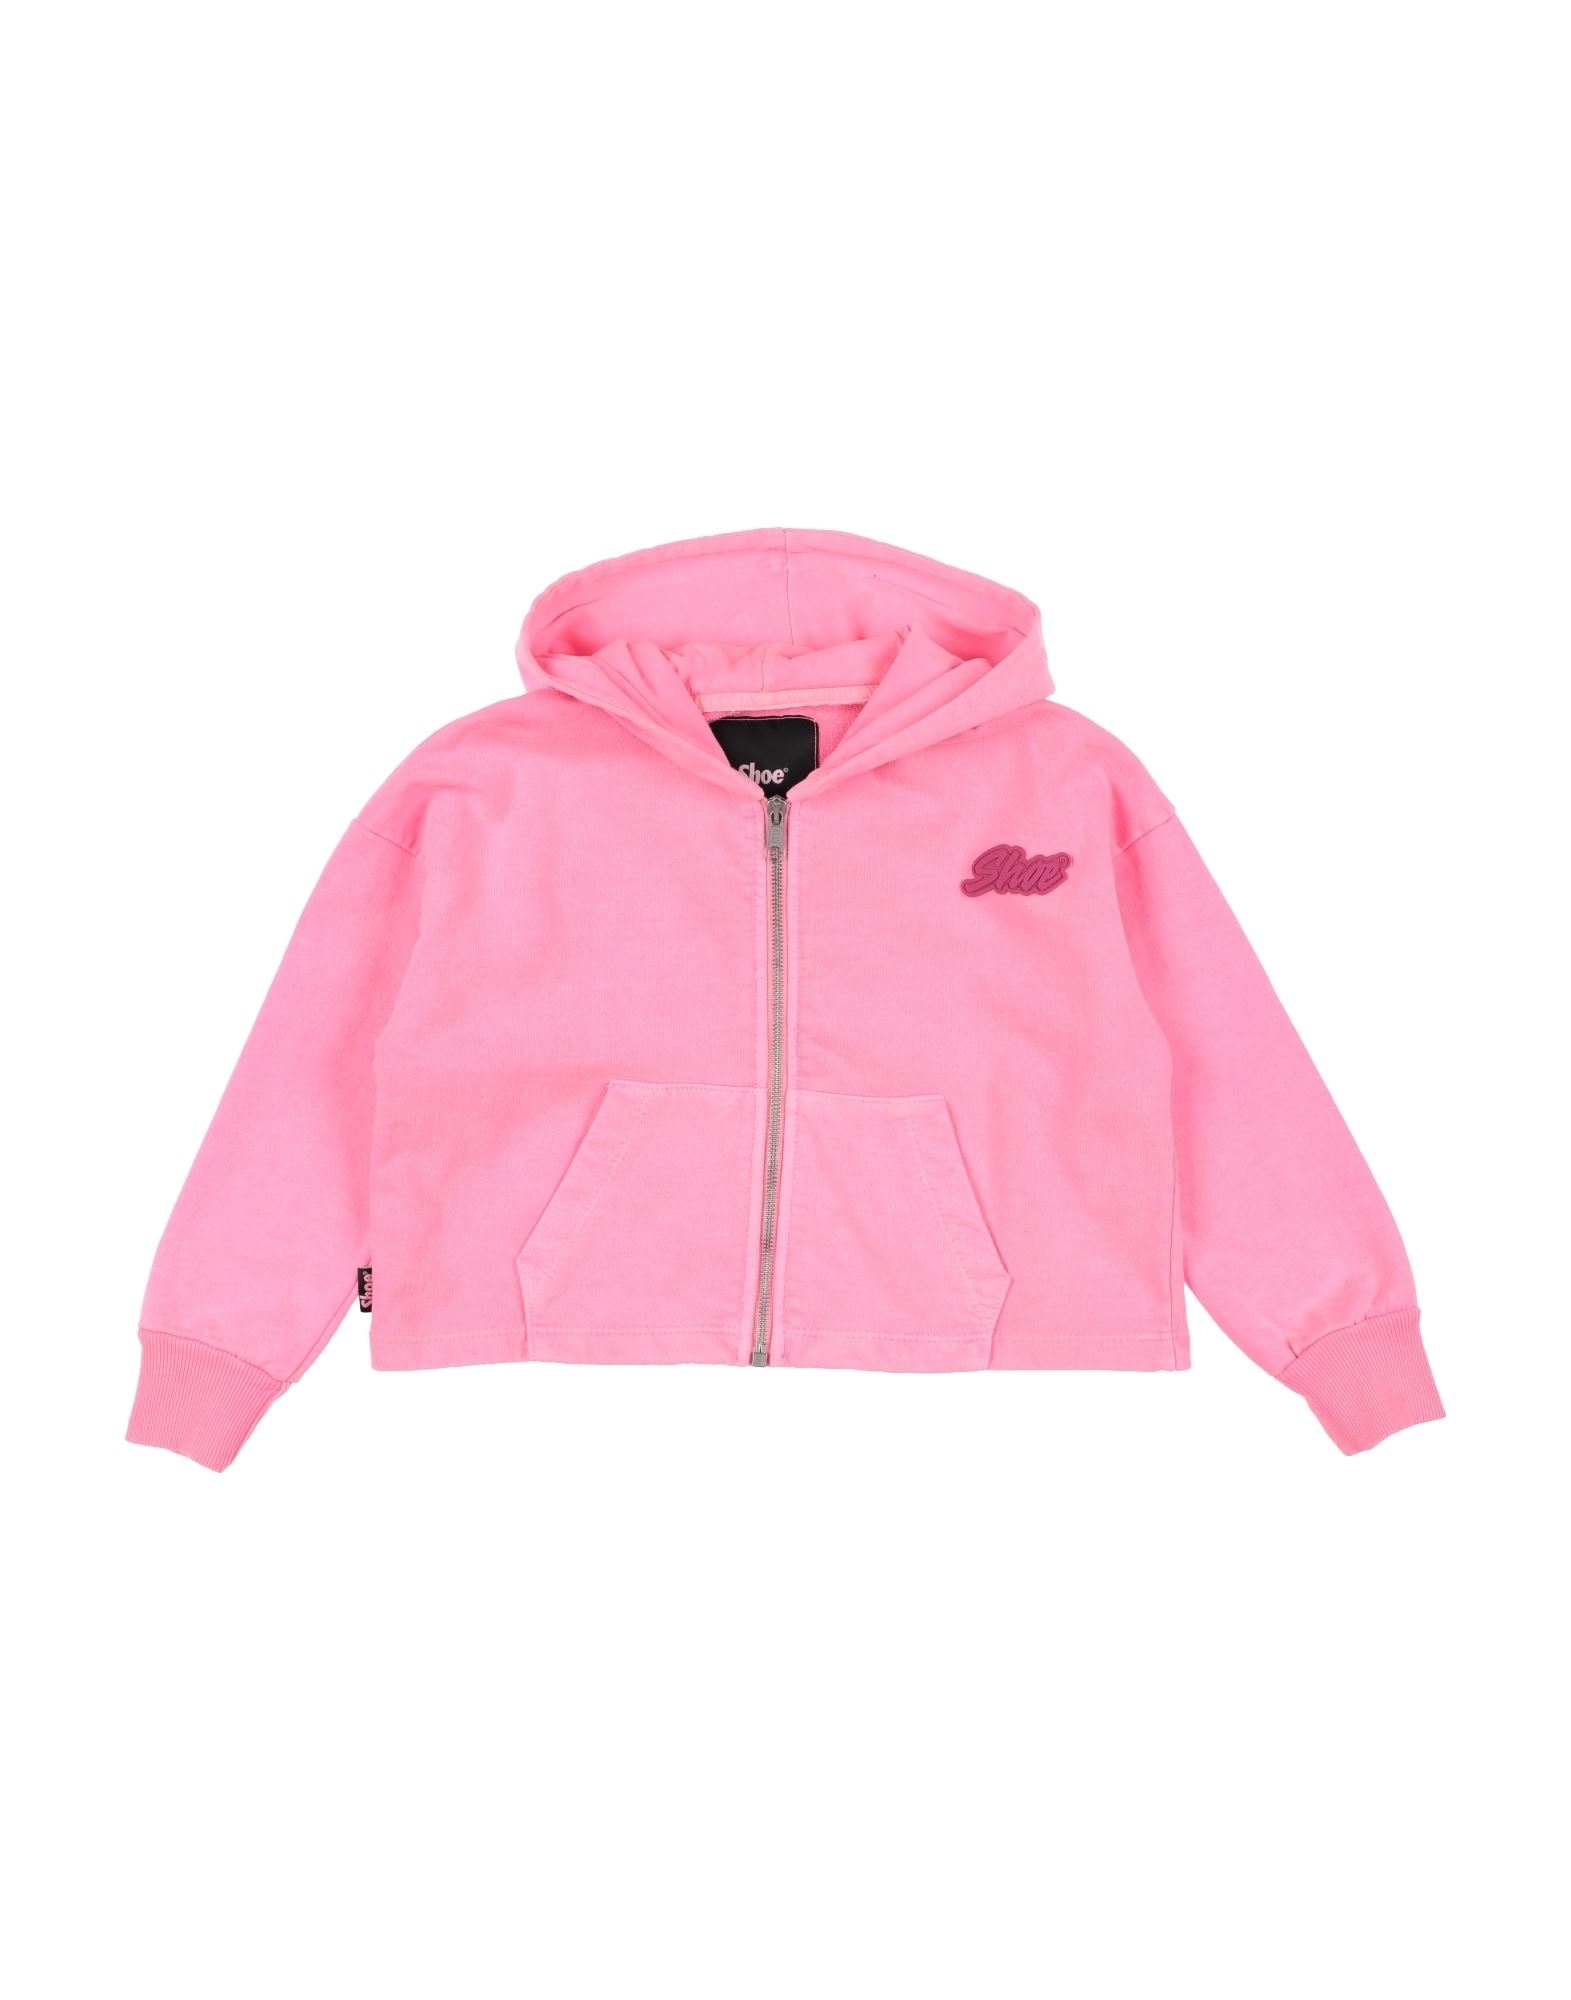 Shoe® Kids' Shoe Toddler Girl Sweatshirt Fuchsia Size 6 Cotton In Pink